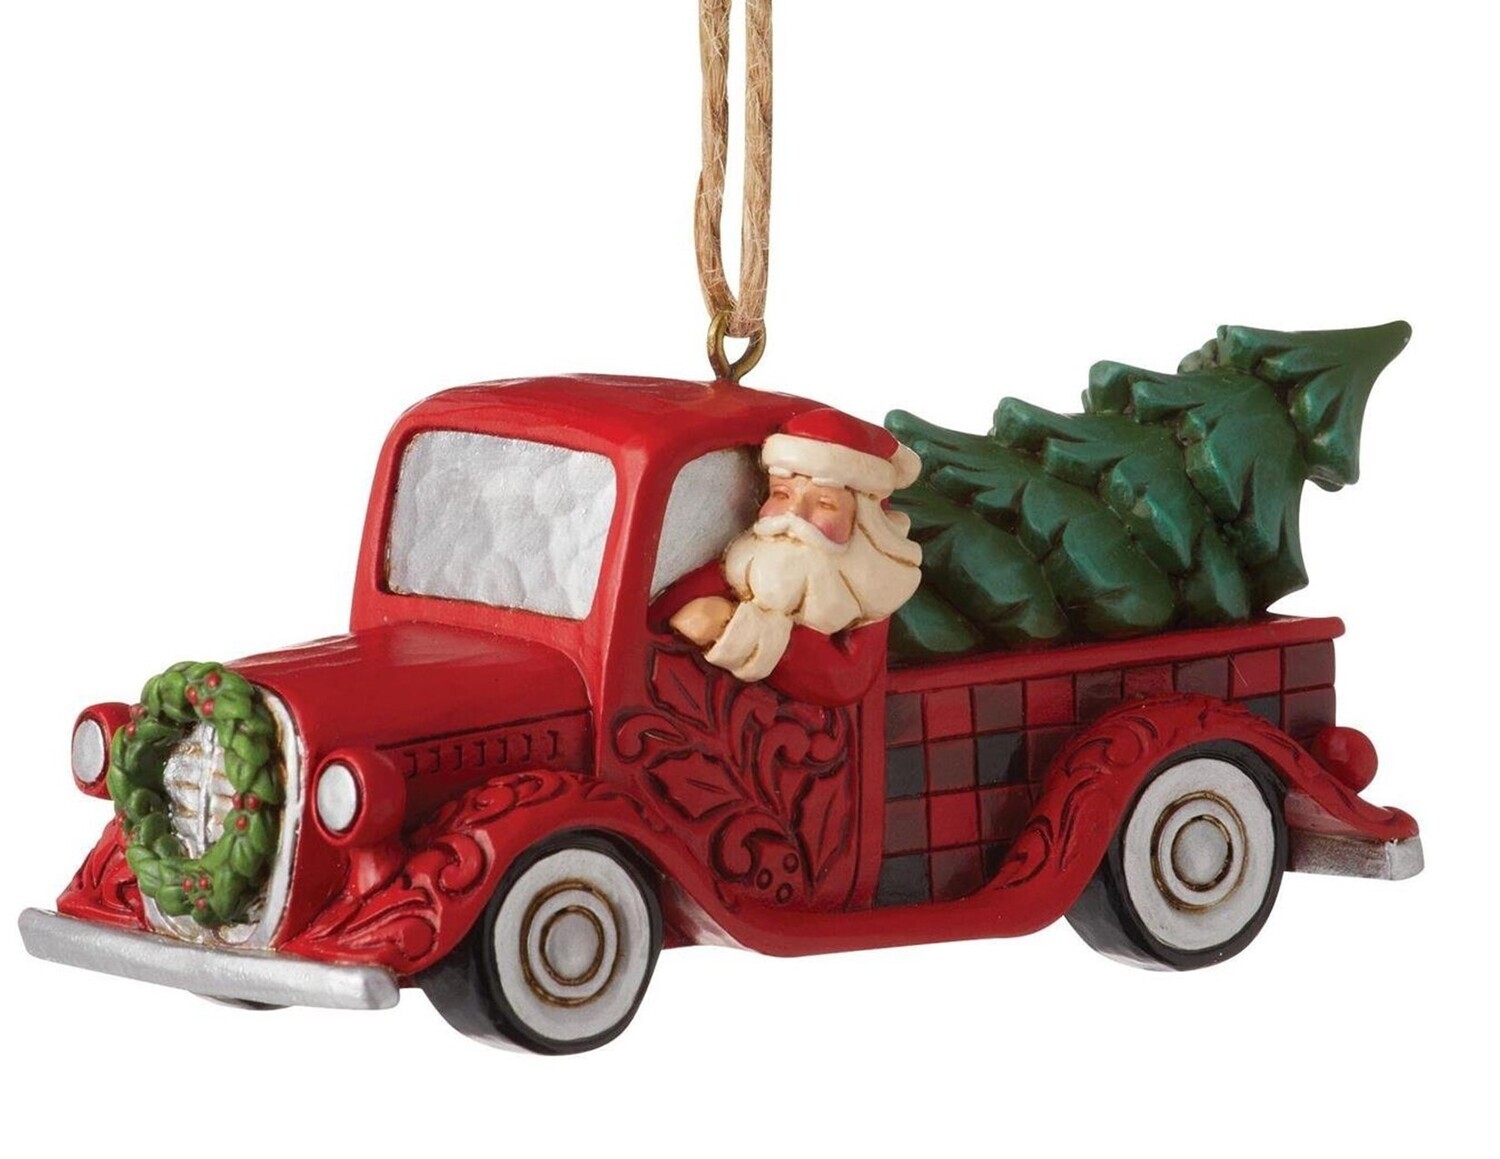 Jim Shore Heartwood Creek "Santa in Plaid Red Truck" Ornament (6012872)